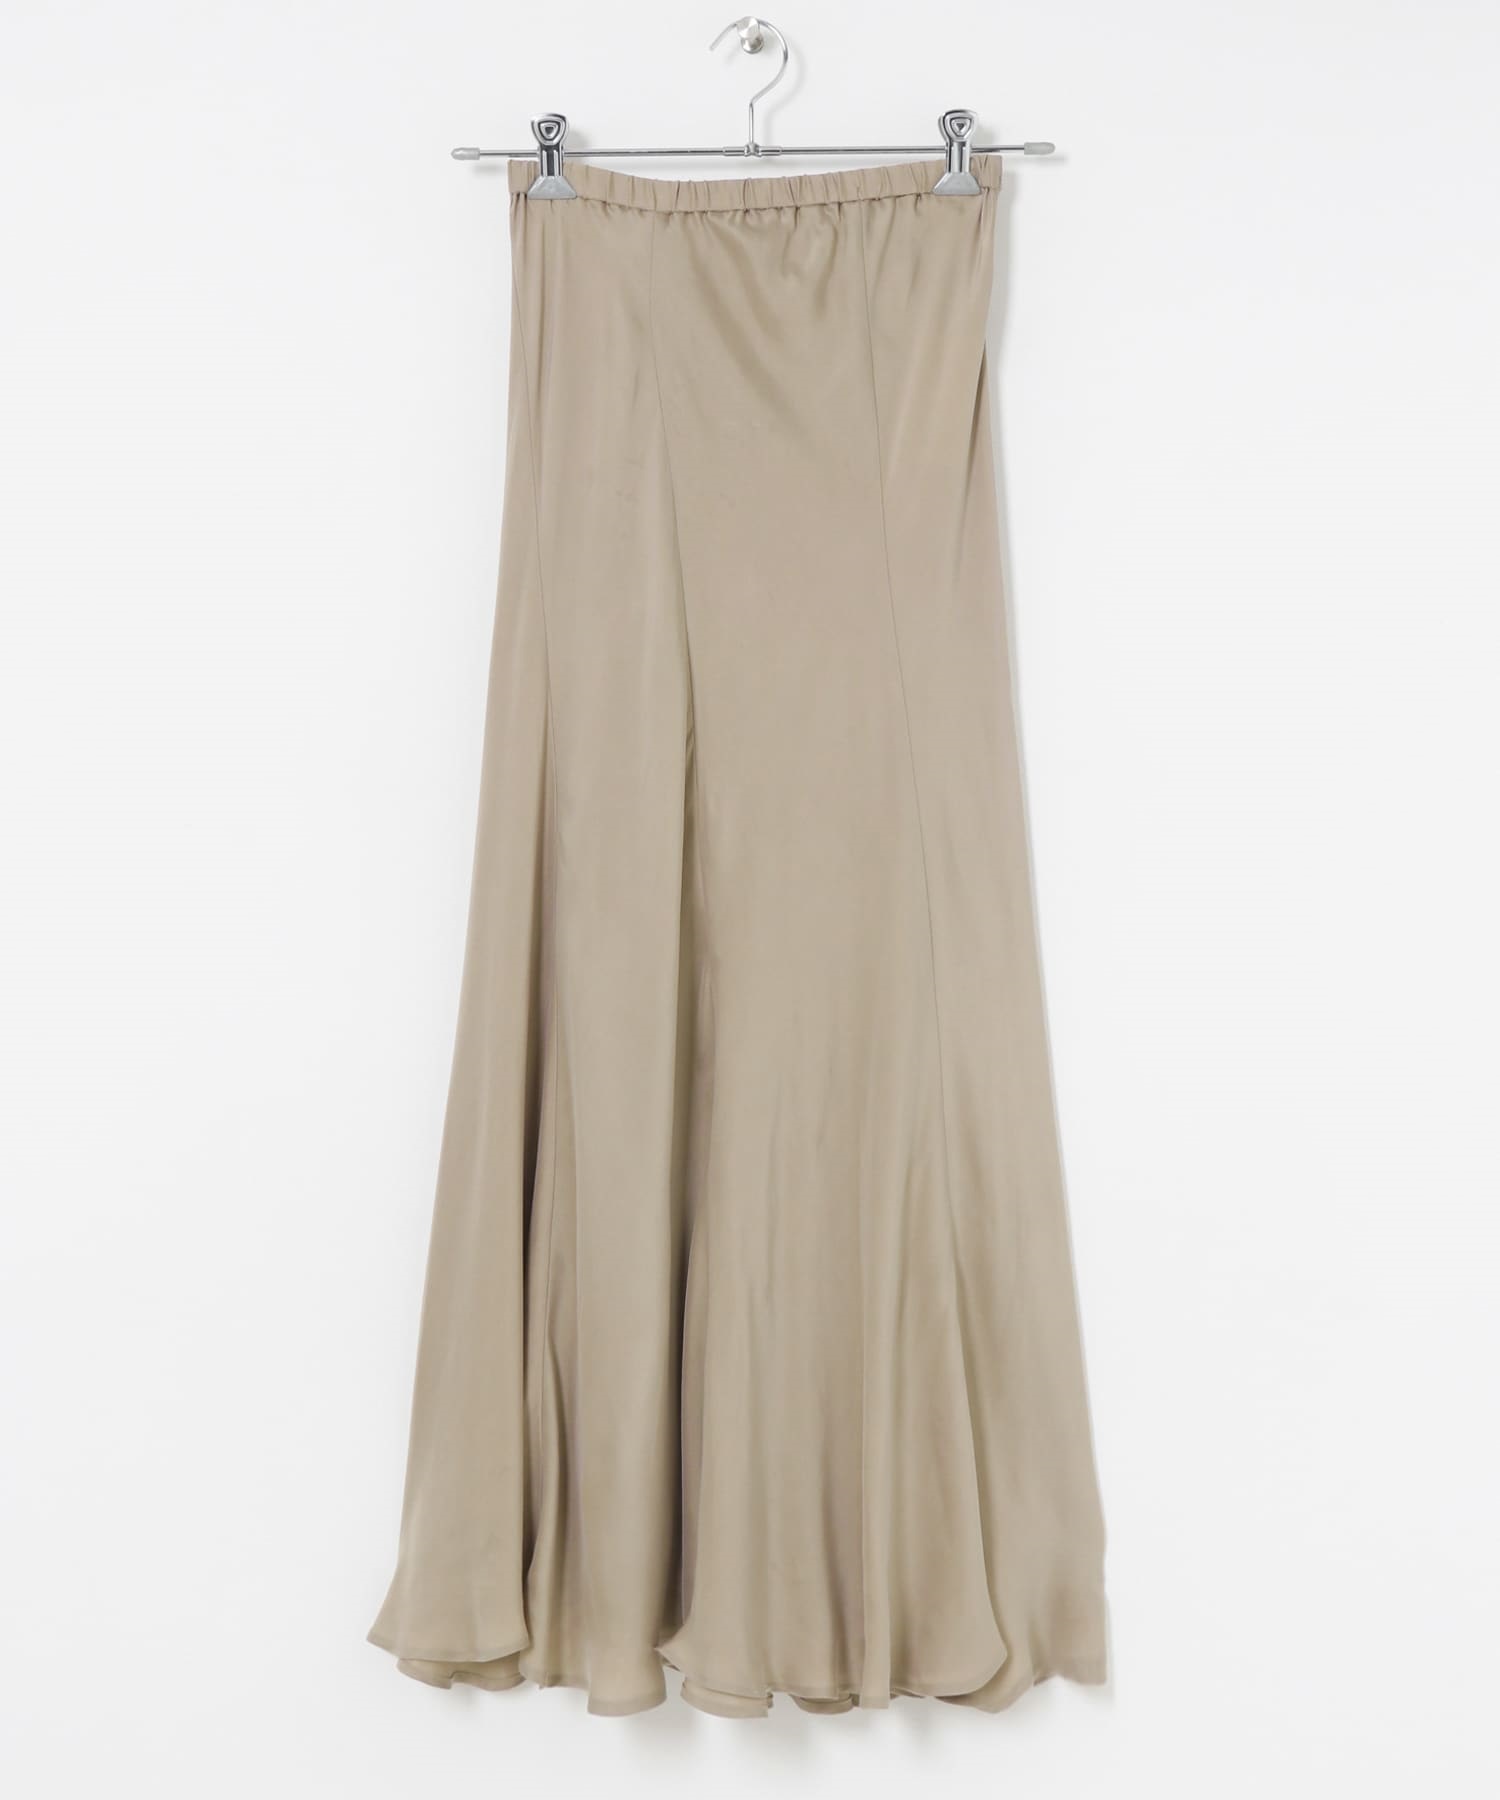 銅氨纖維斜裁傘狀裙(灰膚色-FREE-其他膚色)